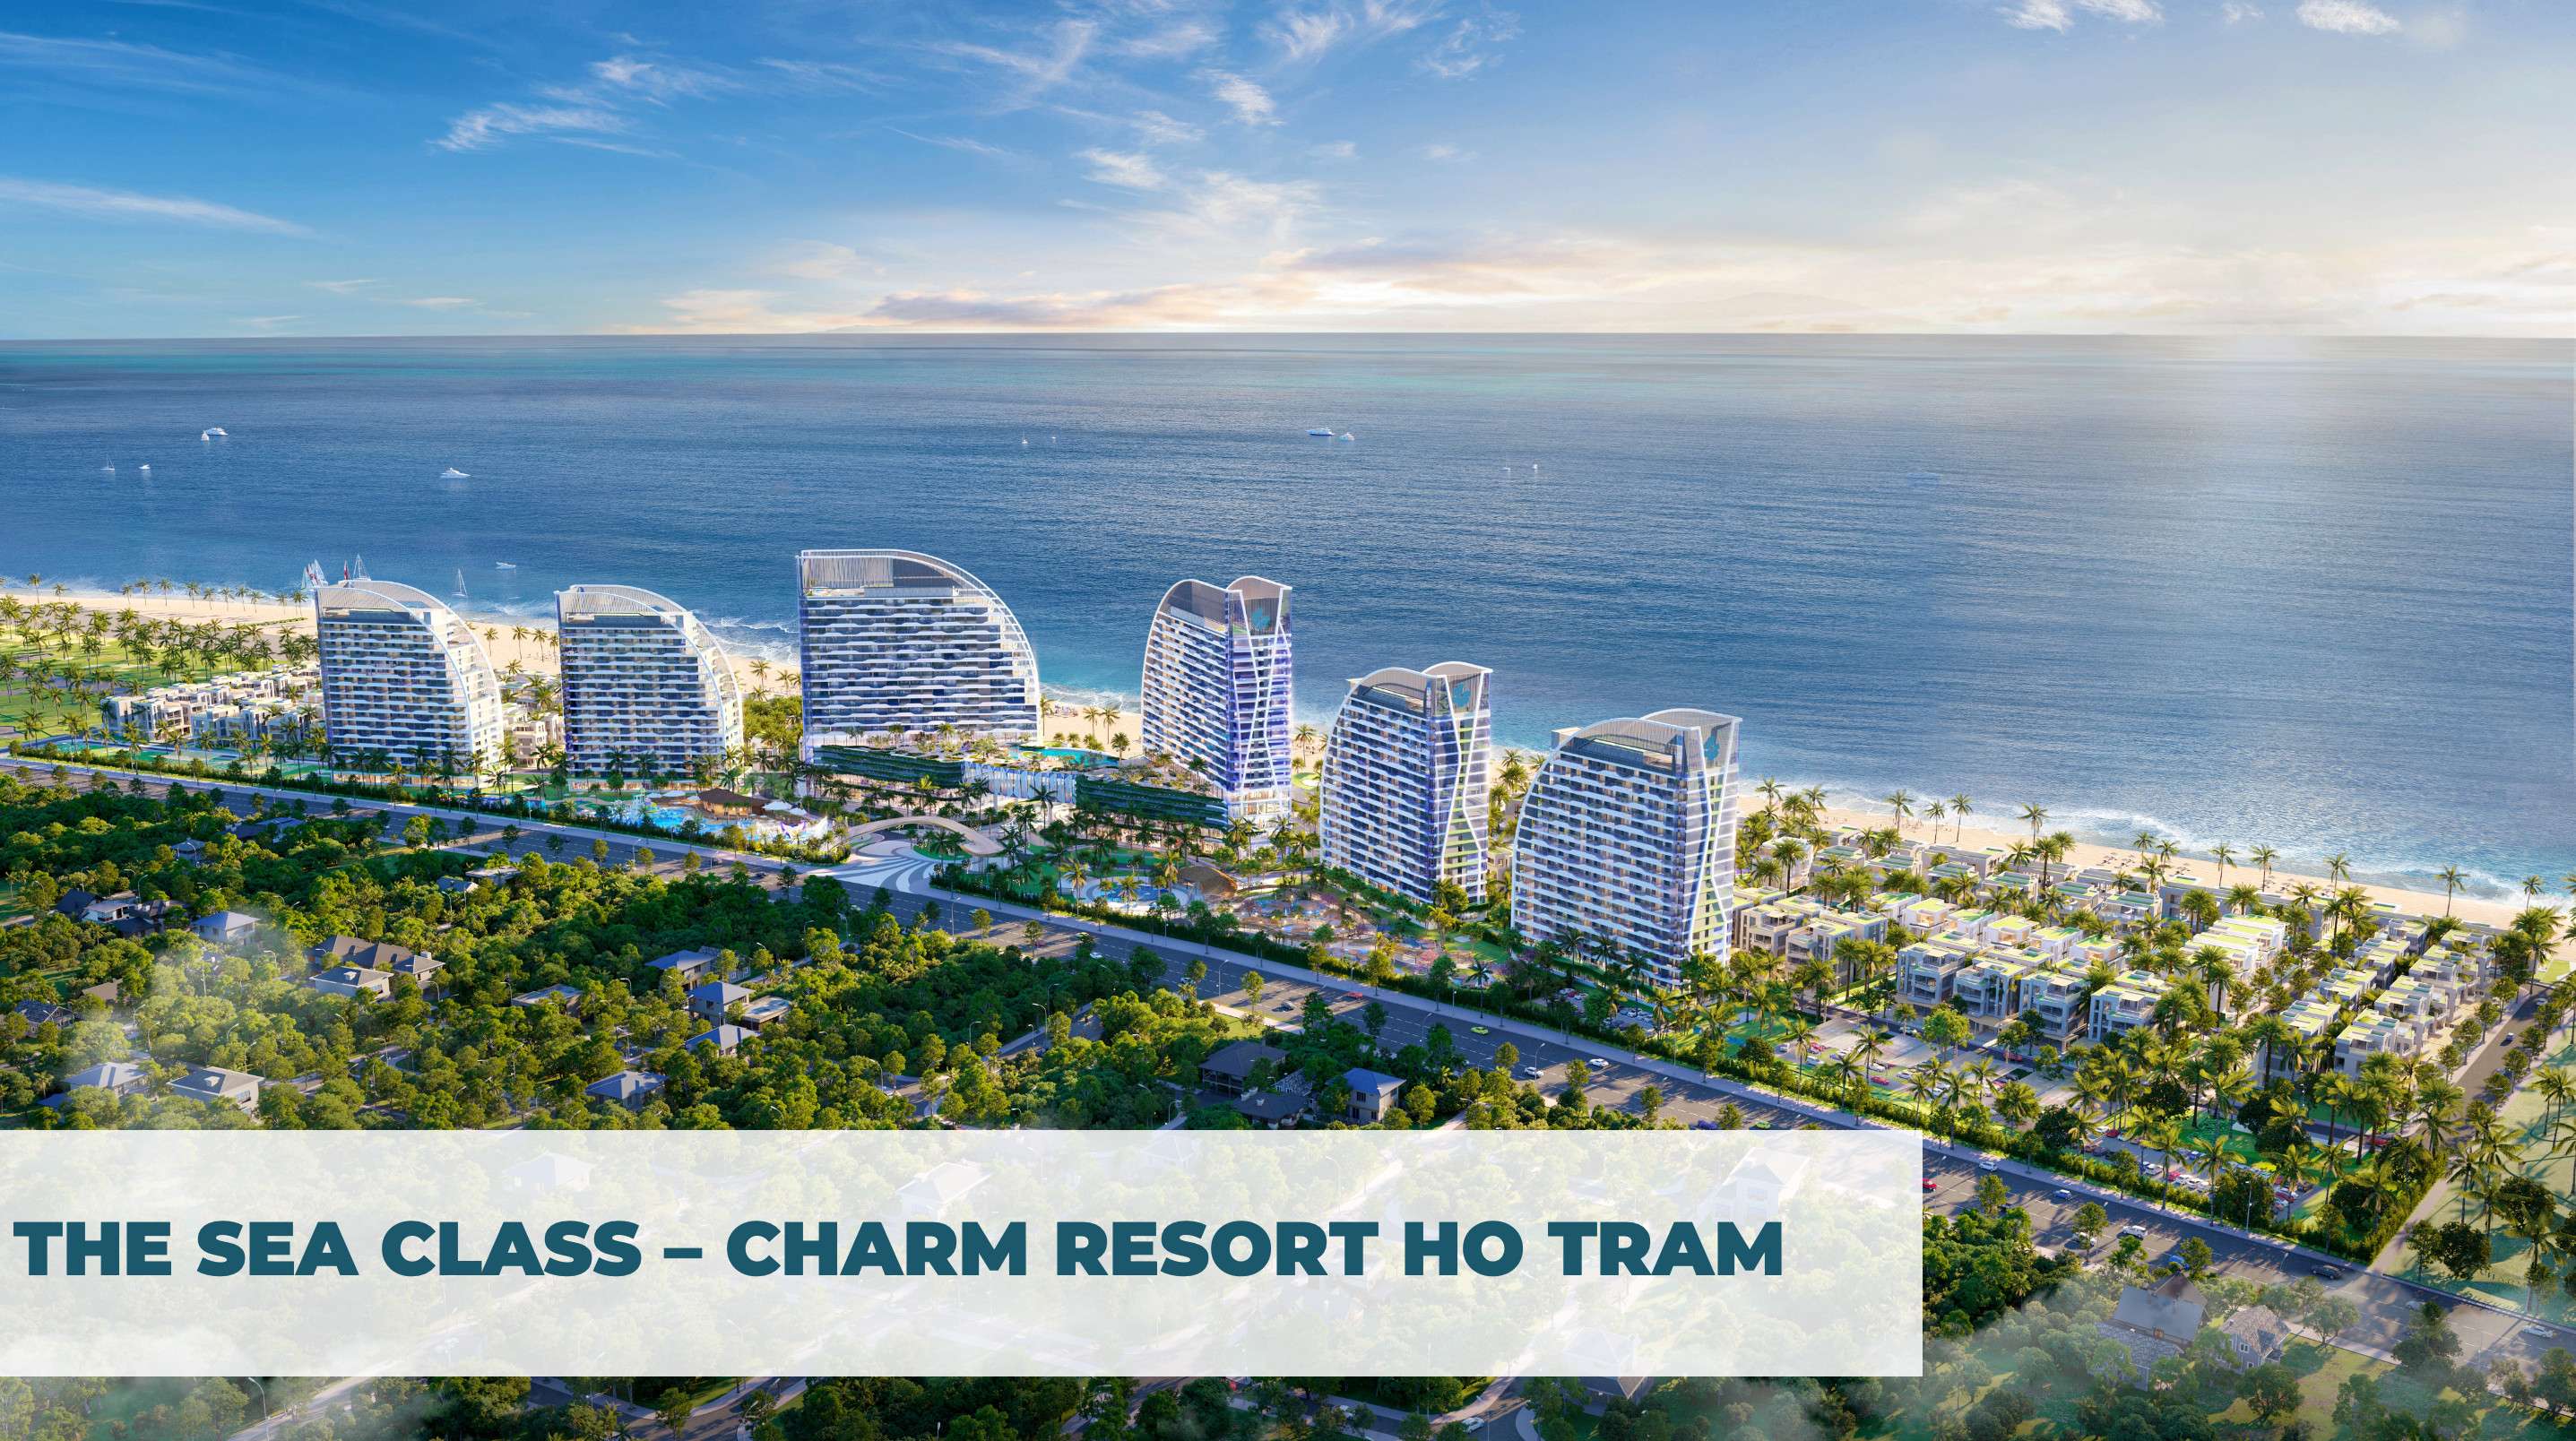 The Sea Class - Dự án Charm resort Hồ Tràm